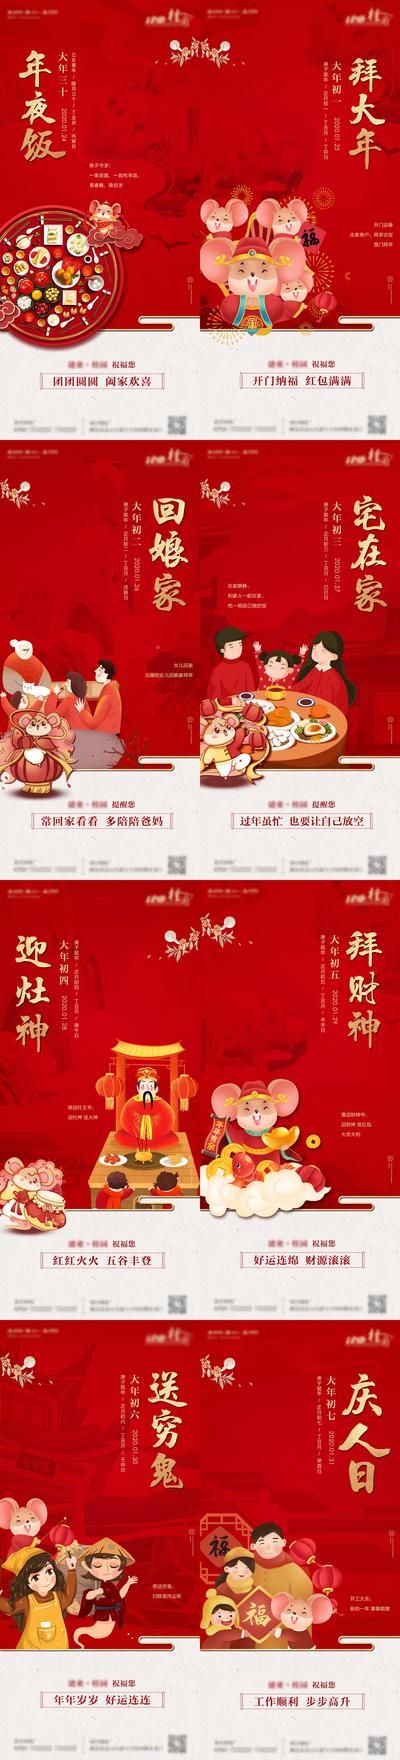 南门网 海报 新年 春节 中国传统节日 年俗 习俗 红金 卡通 插画 年夜饭 初一 初七